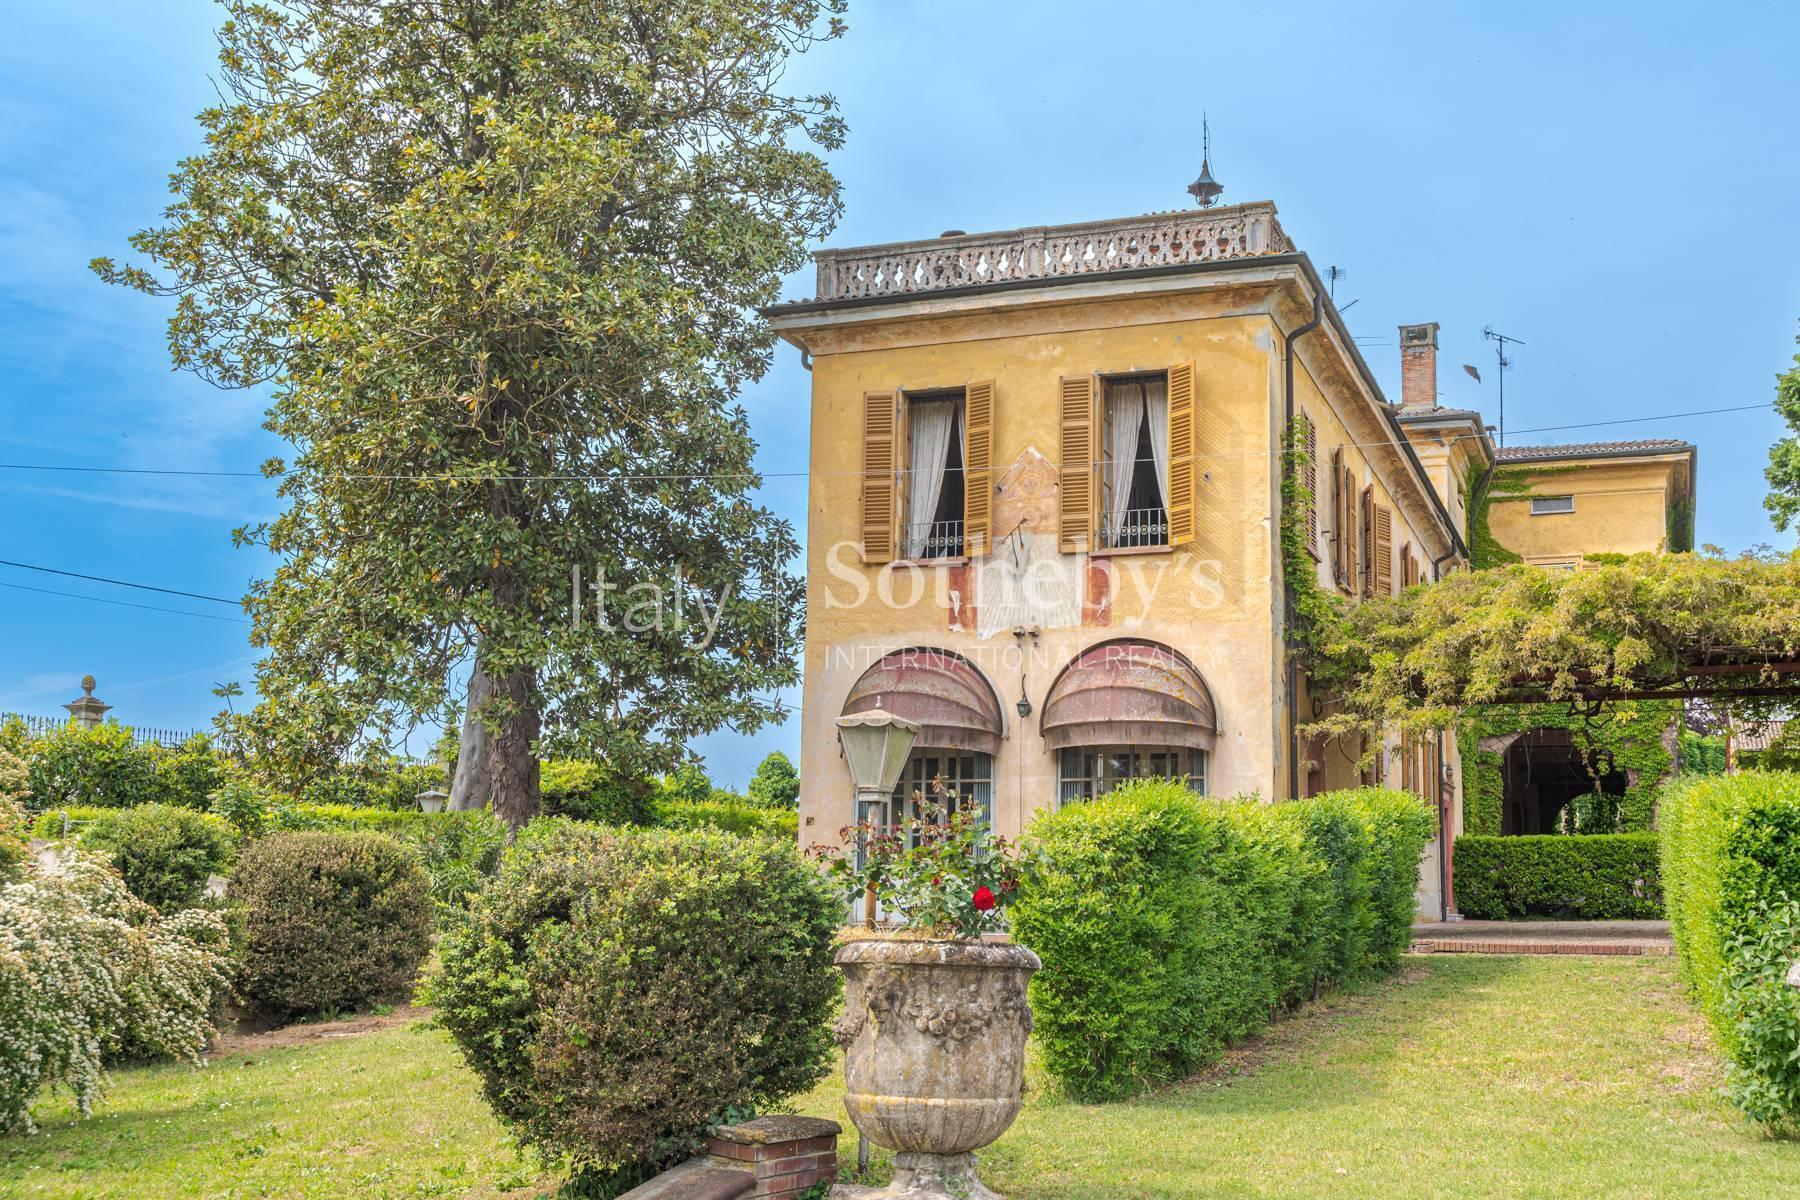 Cascina Bella - 18th century villa with park in Oltrepo' Pavese - 17